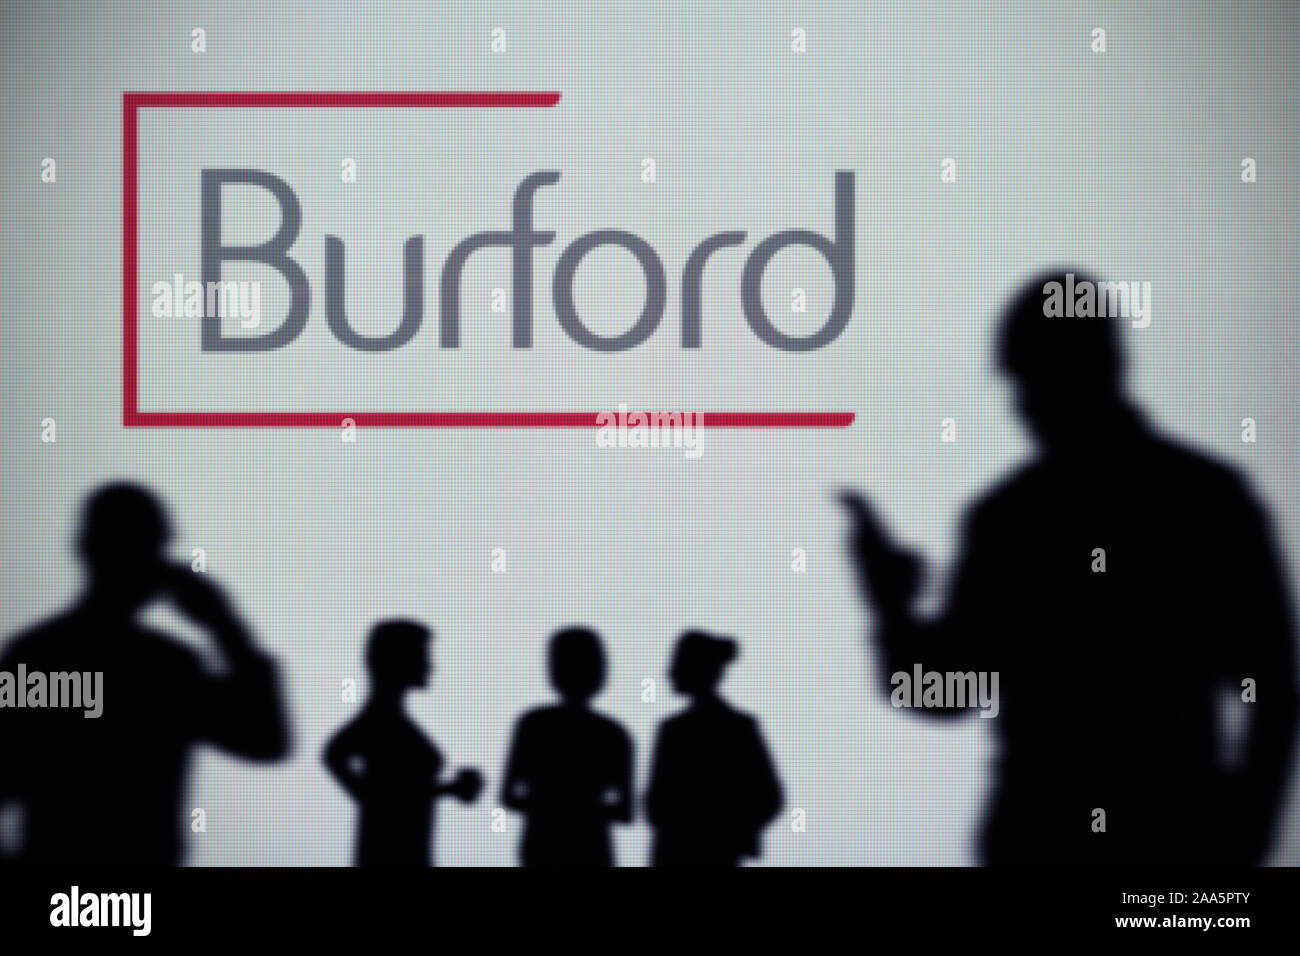 Die burford Hauptstadt Logo ist auf einen LED-Bildschirm im Hintergrund, während eine Silhouette Person ein Smartphone verwendet (nur redaktionelle Nutzung) Stockfoto